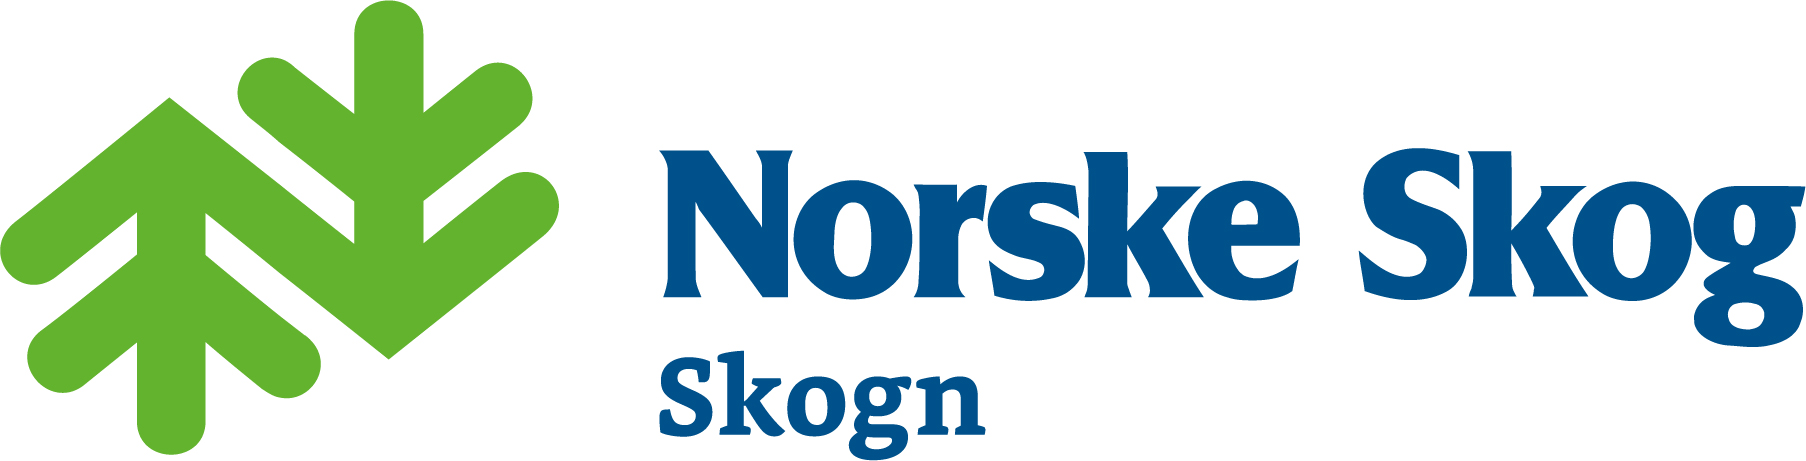 Norske Skog Skogn 